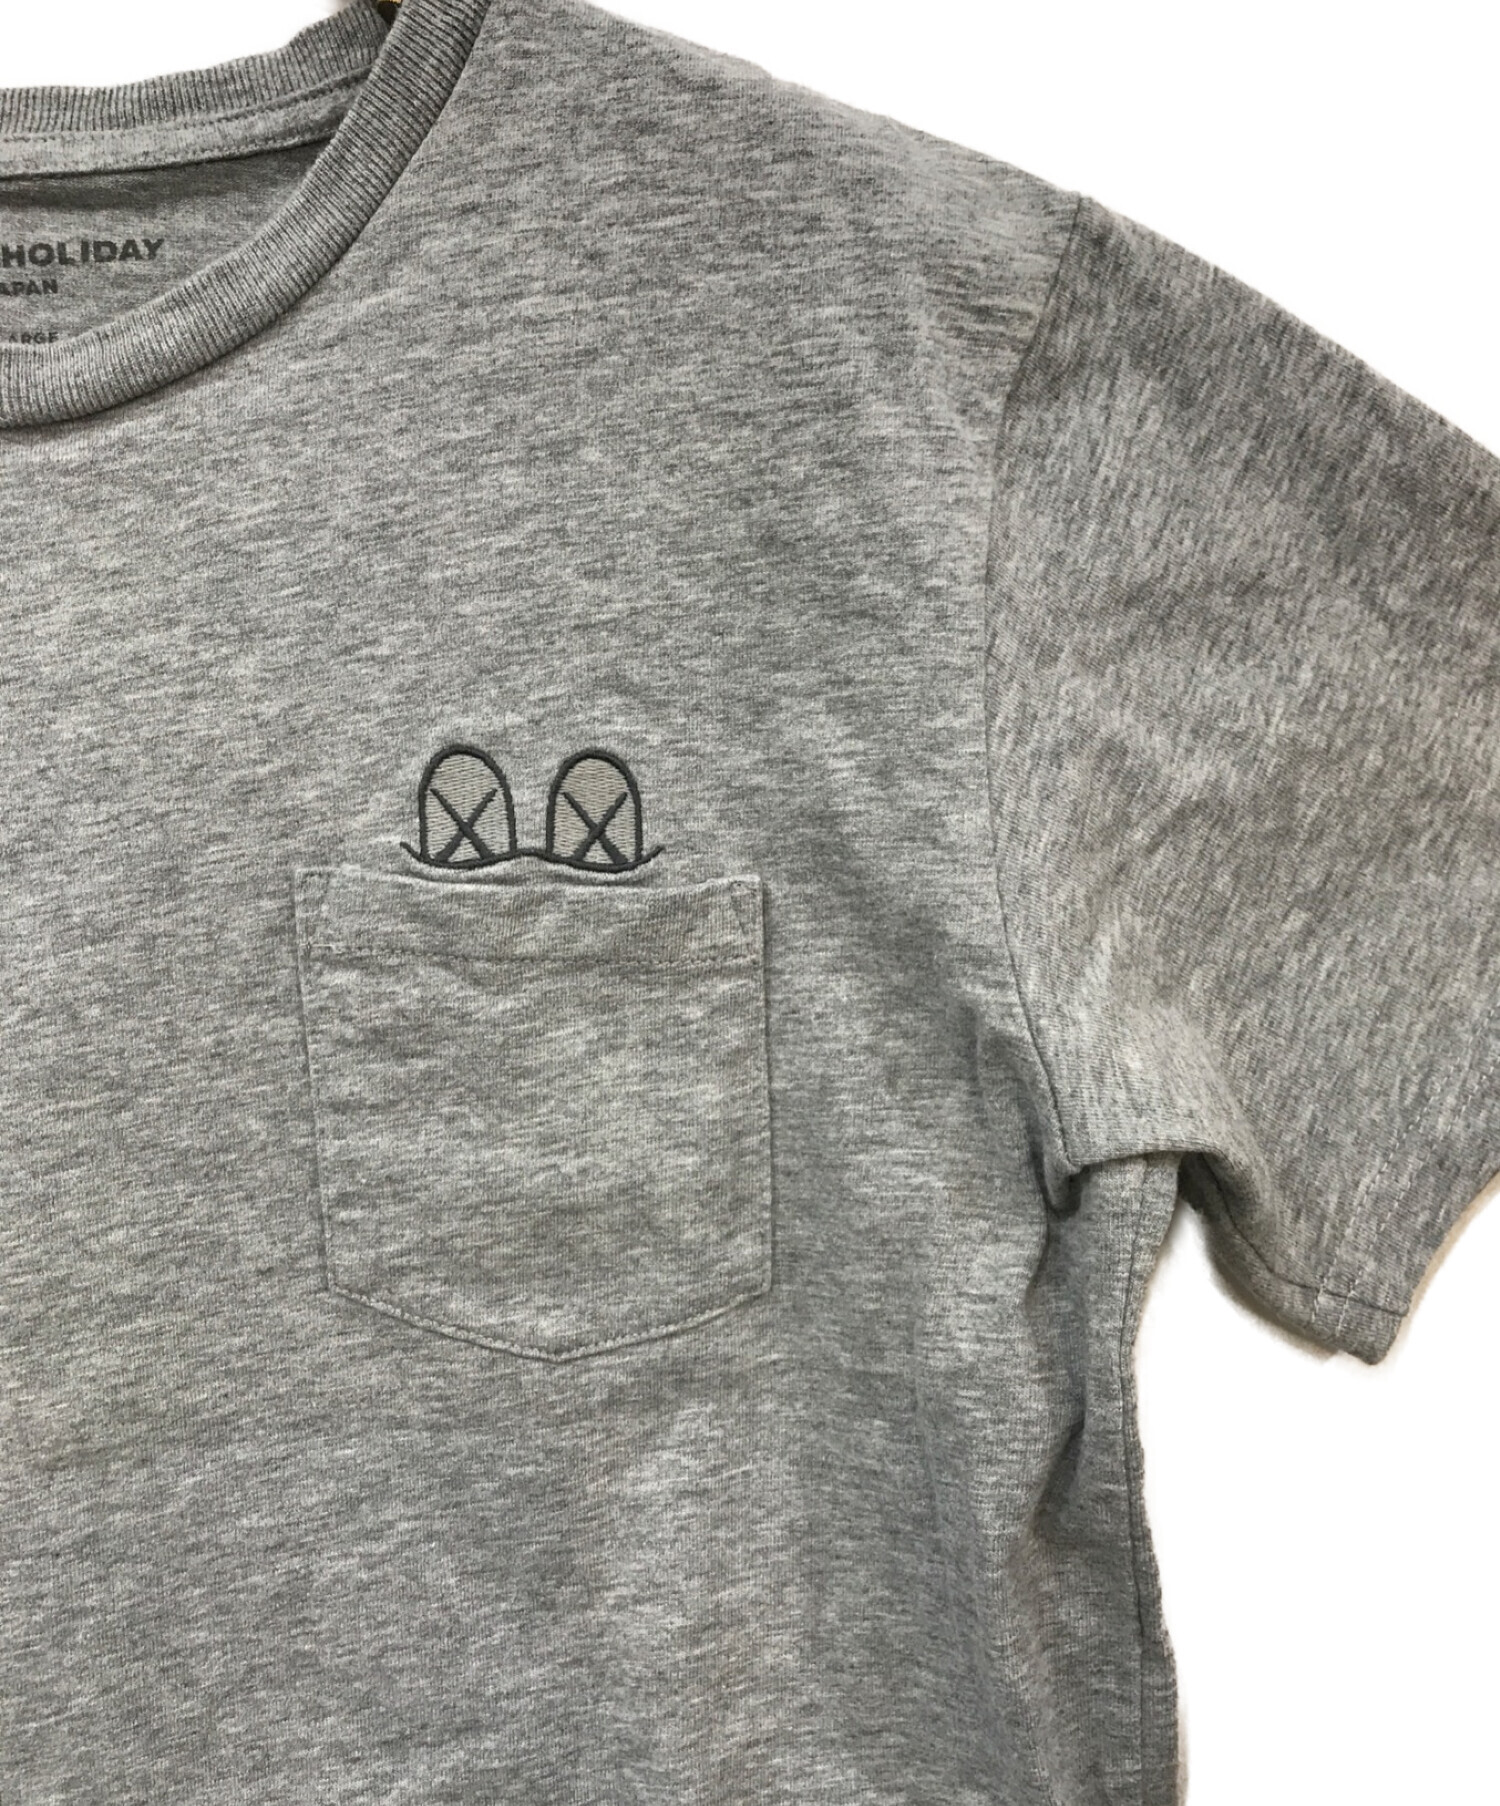 KAWS HOLIDAY (カウズ ホリデイ) ロゴ刺繍Tシャツ グレー サイズ:LARGE